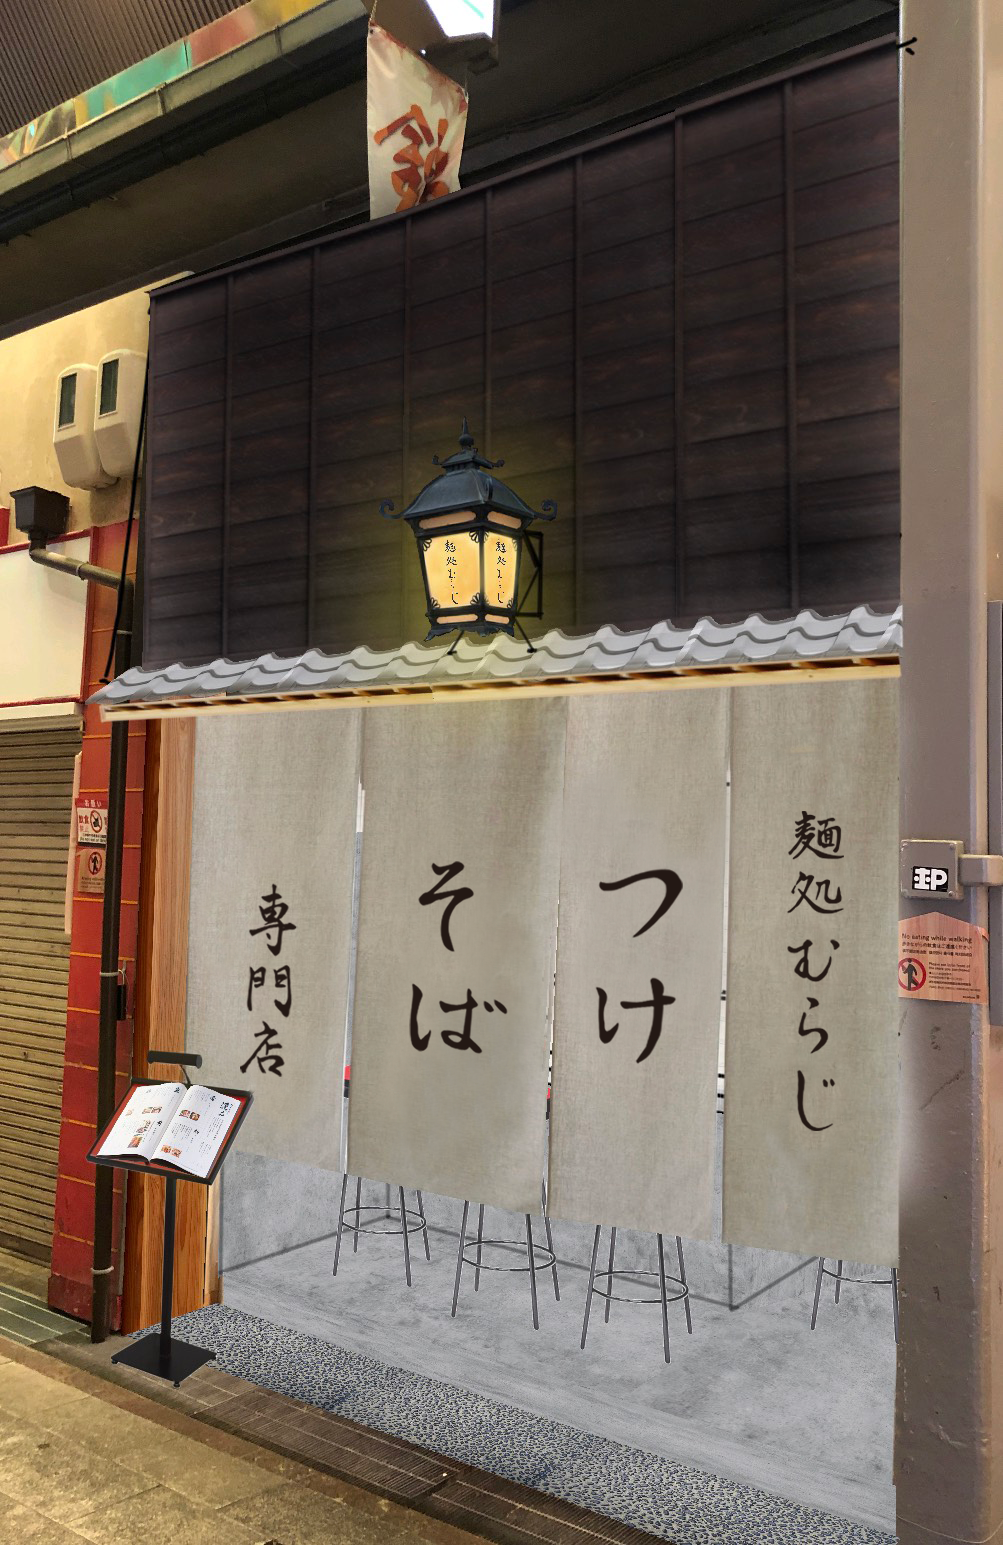 「祇園麺処むらじ」の新店「つけそば むらじ」が京の台所・錦市場にオープンいたします。